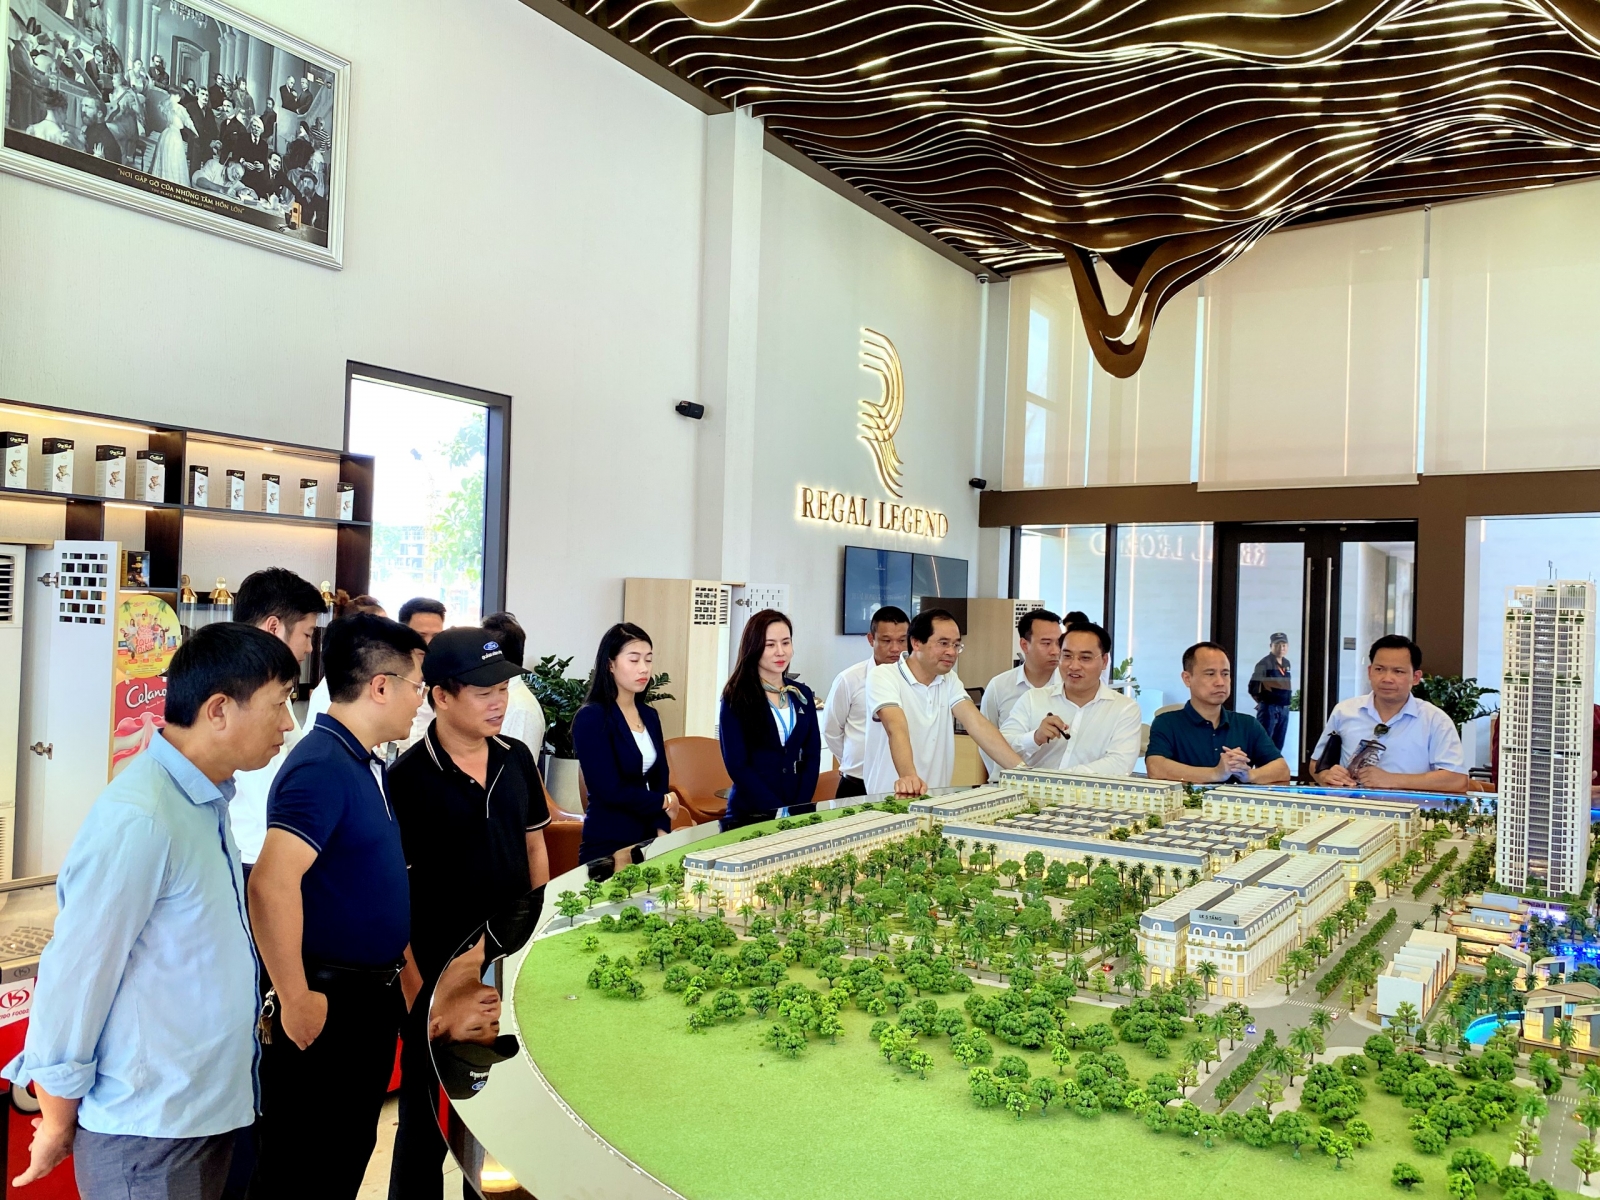 Thị trường bất động sản sẽ “đảo chiều” - Viet Nam Smart City